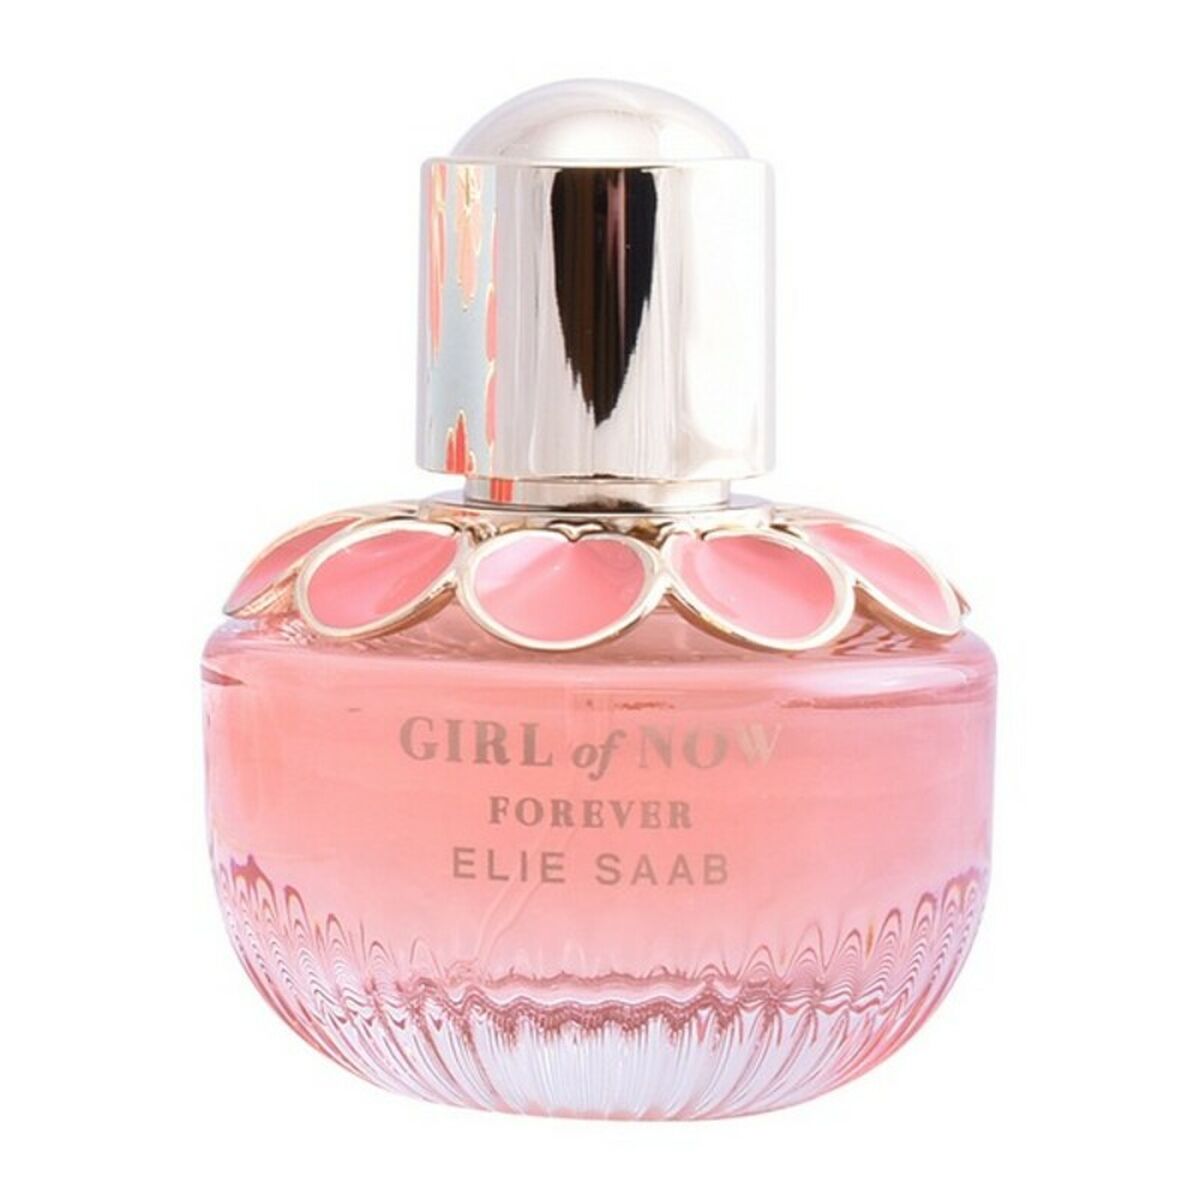 Parfum pentru femei Elie Saab Edp Girl of Now Forever (90 ml)